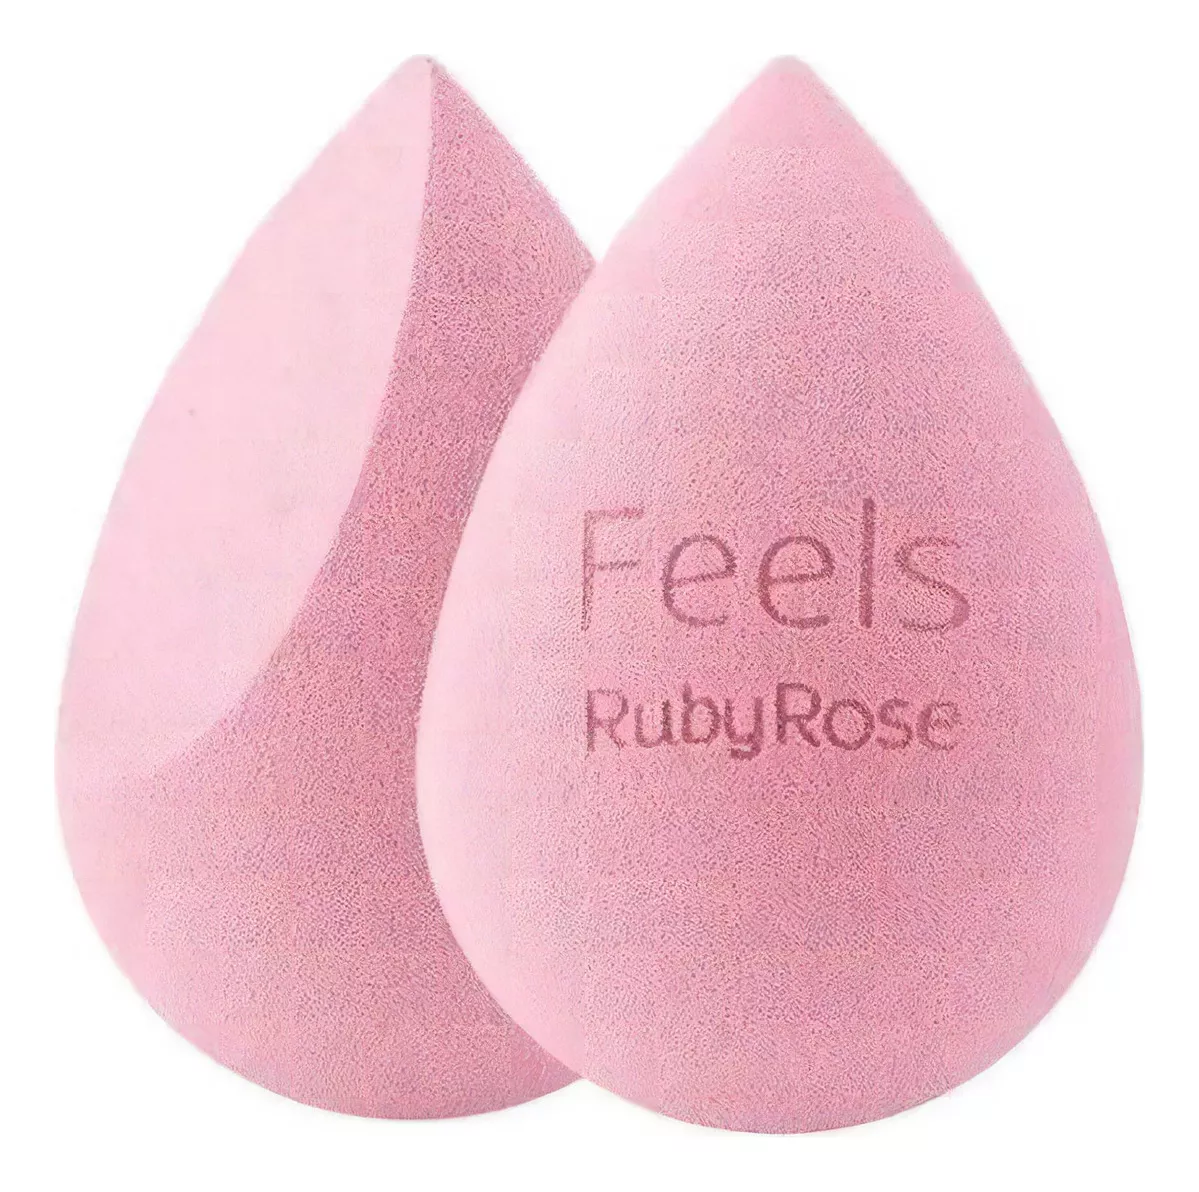 Primeira imagem para pesquisa de esponja ruby rose